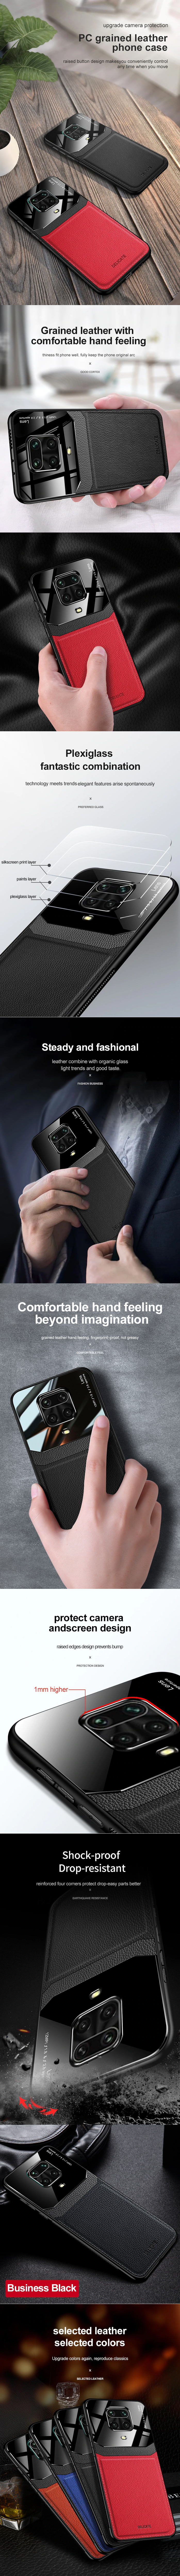 کاور دور دوخت چرم و گلس مدل Delicate Case مناسب برای گوشی موبایل شیائومی Redmi Note 9S/Note 9 Pro/Note 9 Pro Max